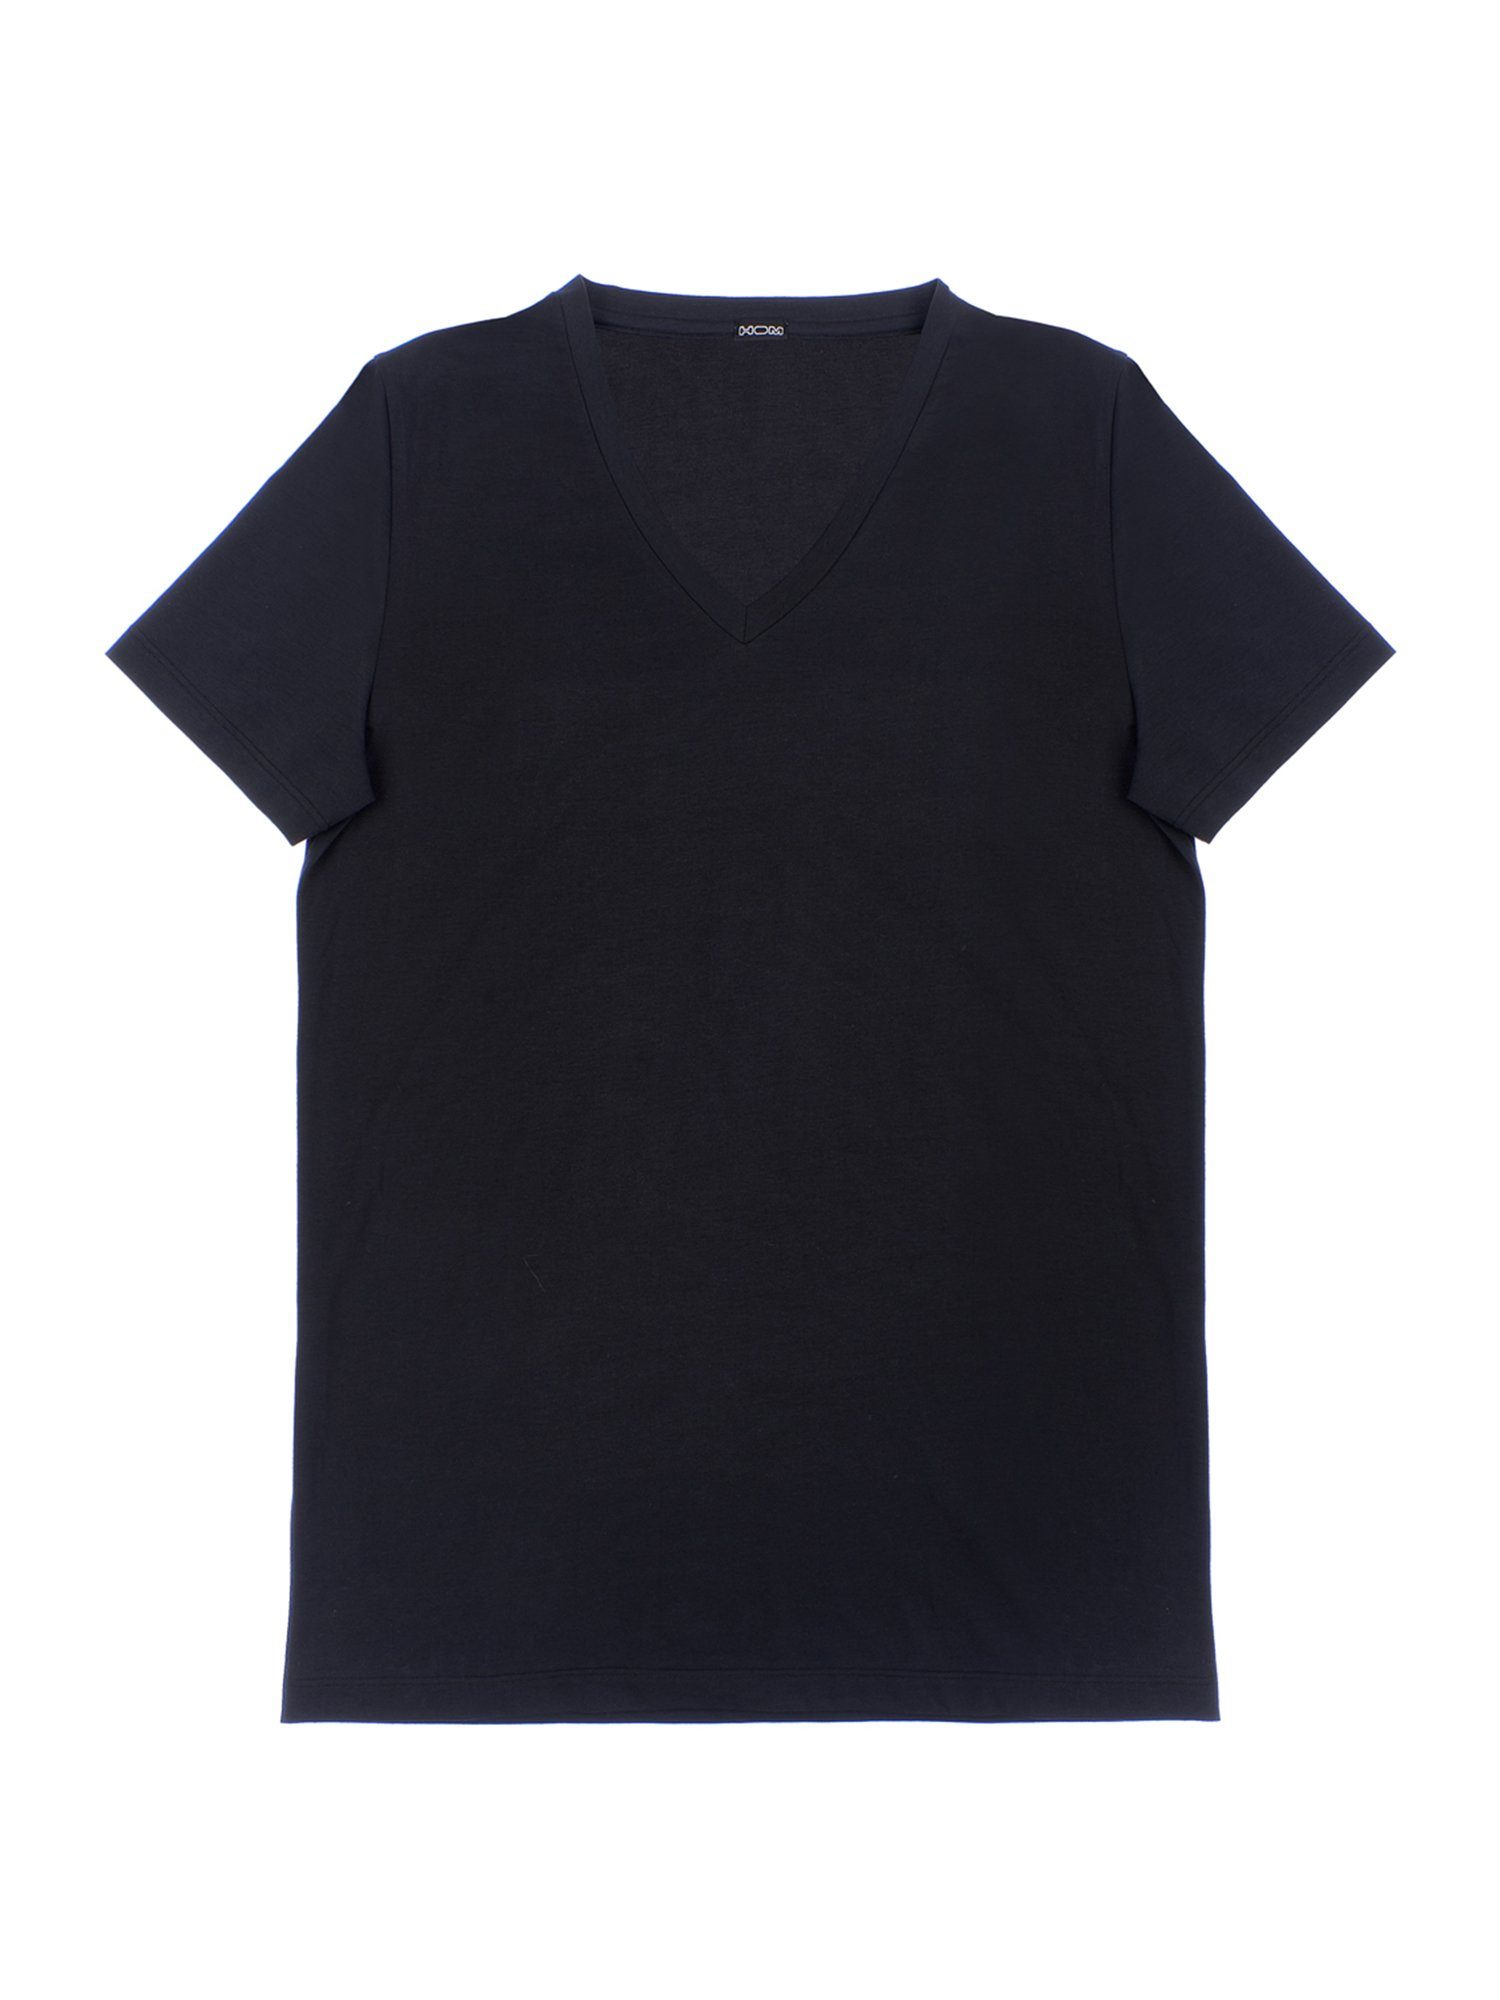 Hom Cotton black Supreme T-Shirt V-Neck